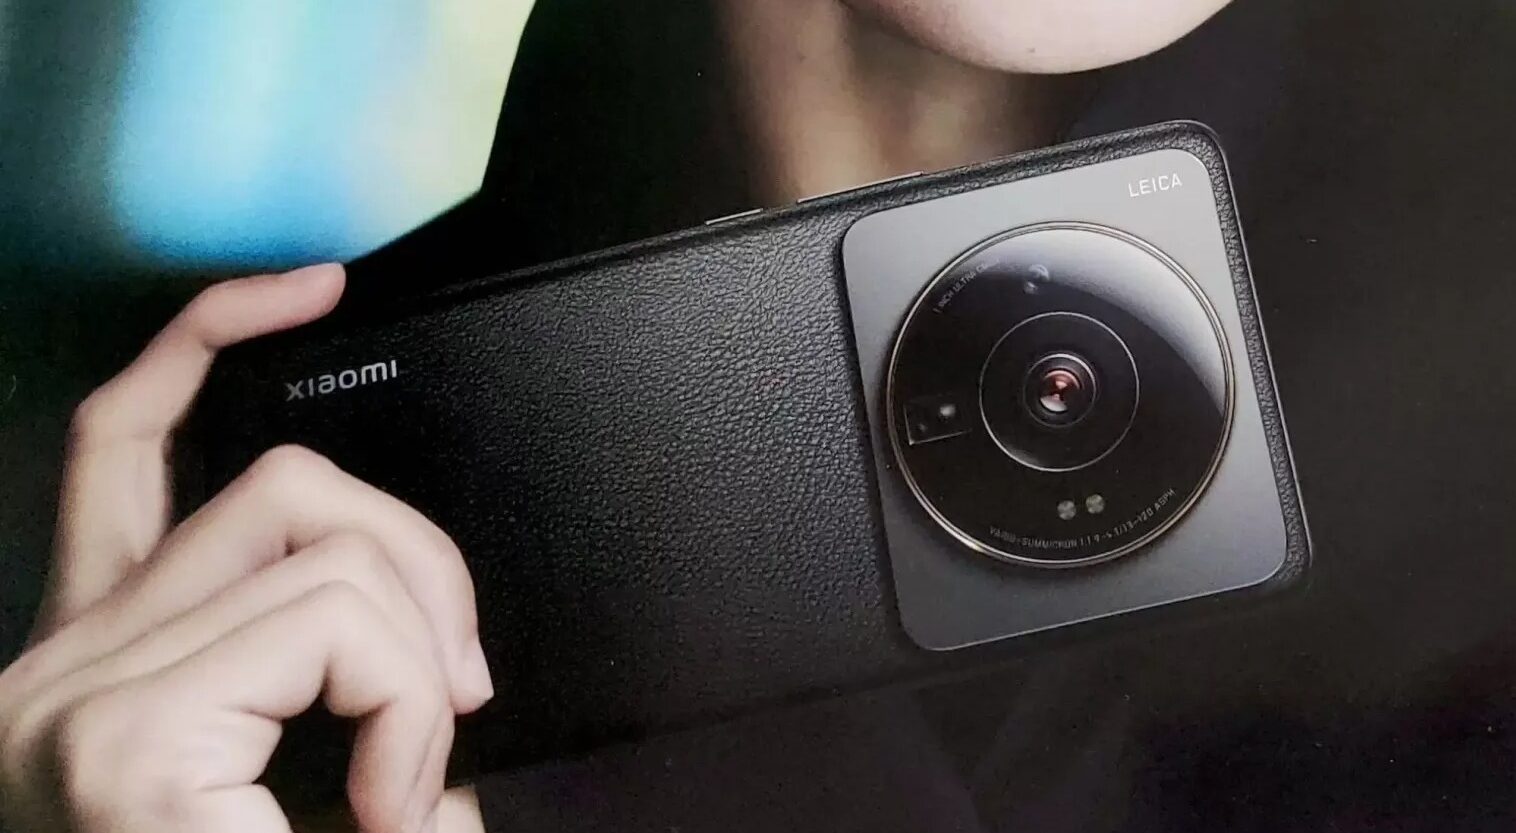 Вышла новая версия Google Camera с настройками Leica. Качаем!